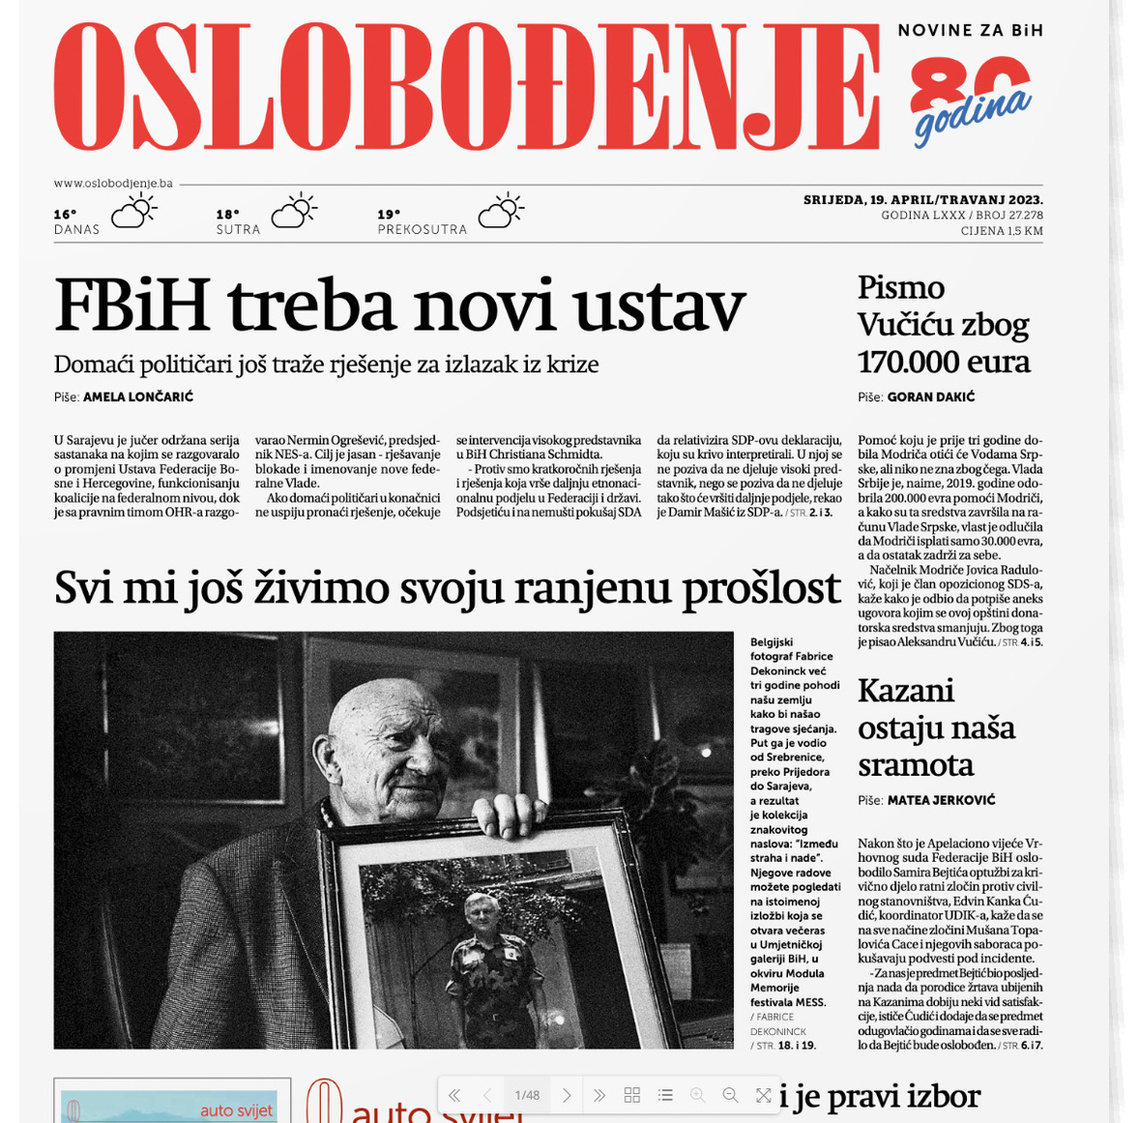 Headline of Bosnia's main newspaper Oslobodenje, April 19 2023.